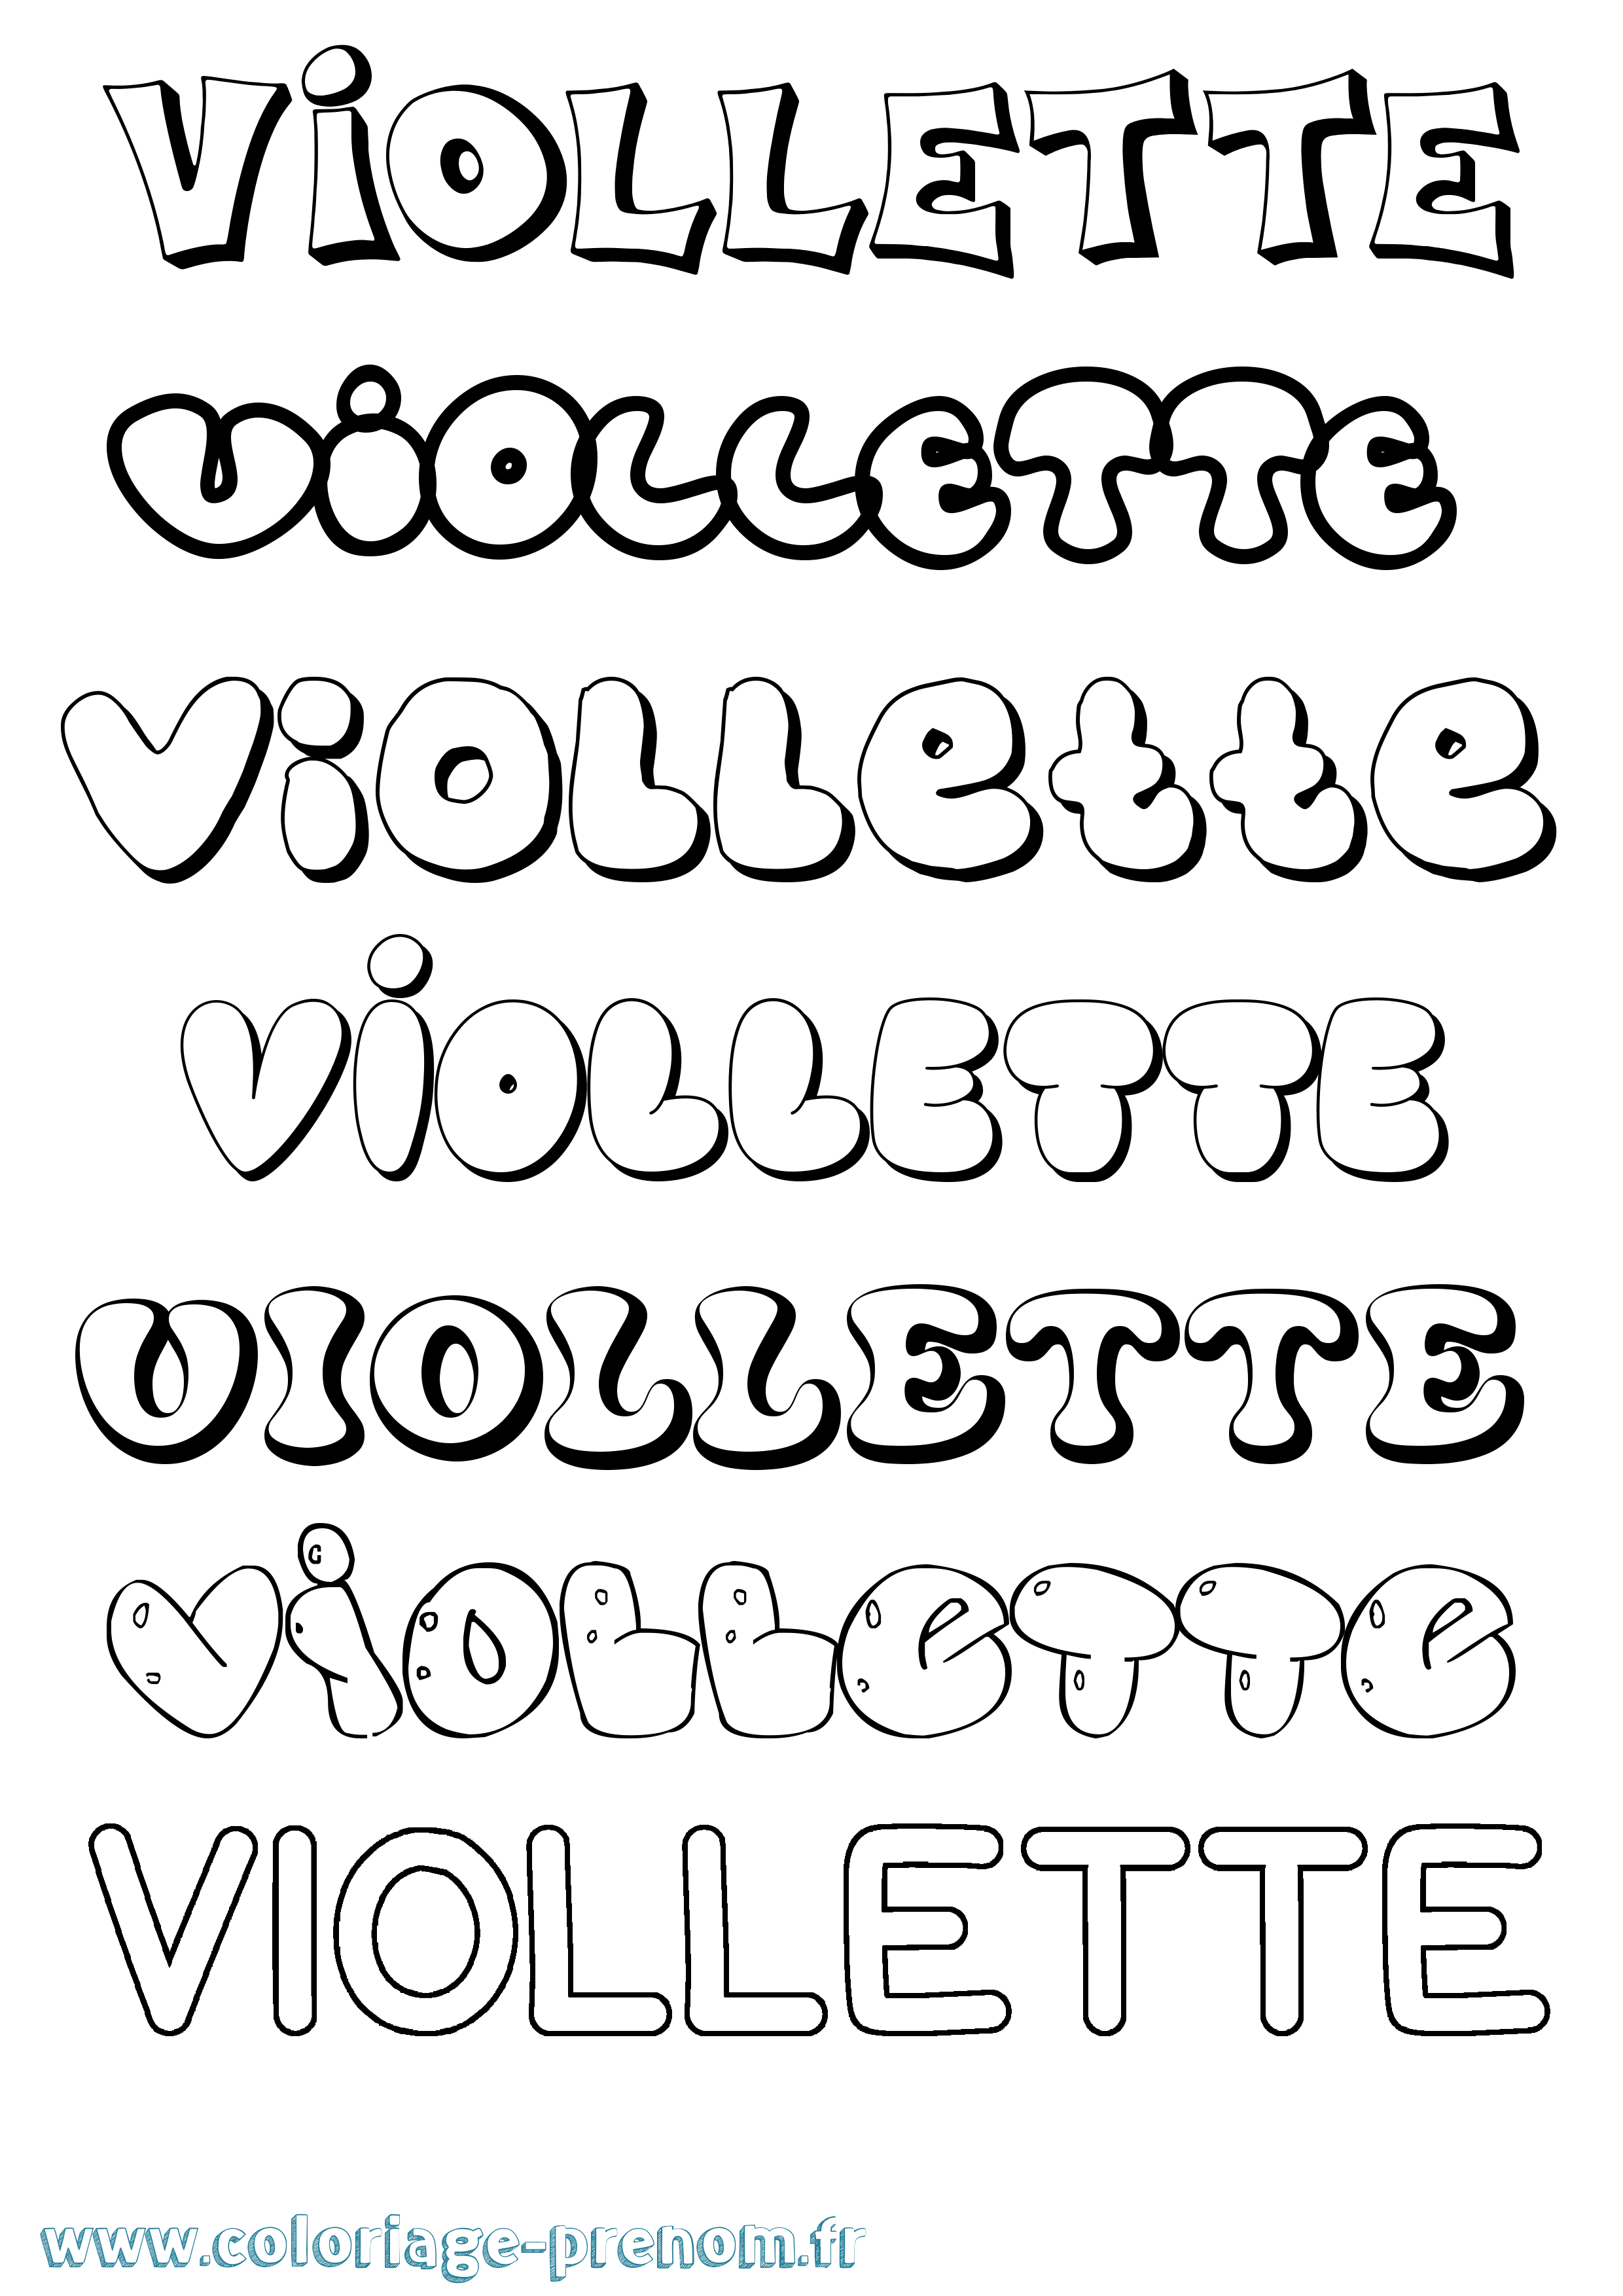 Coloriage prénom Viollette Bubble